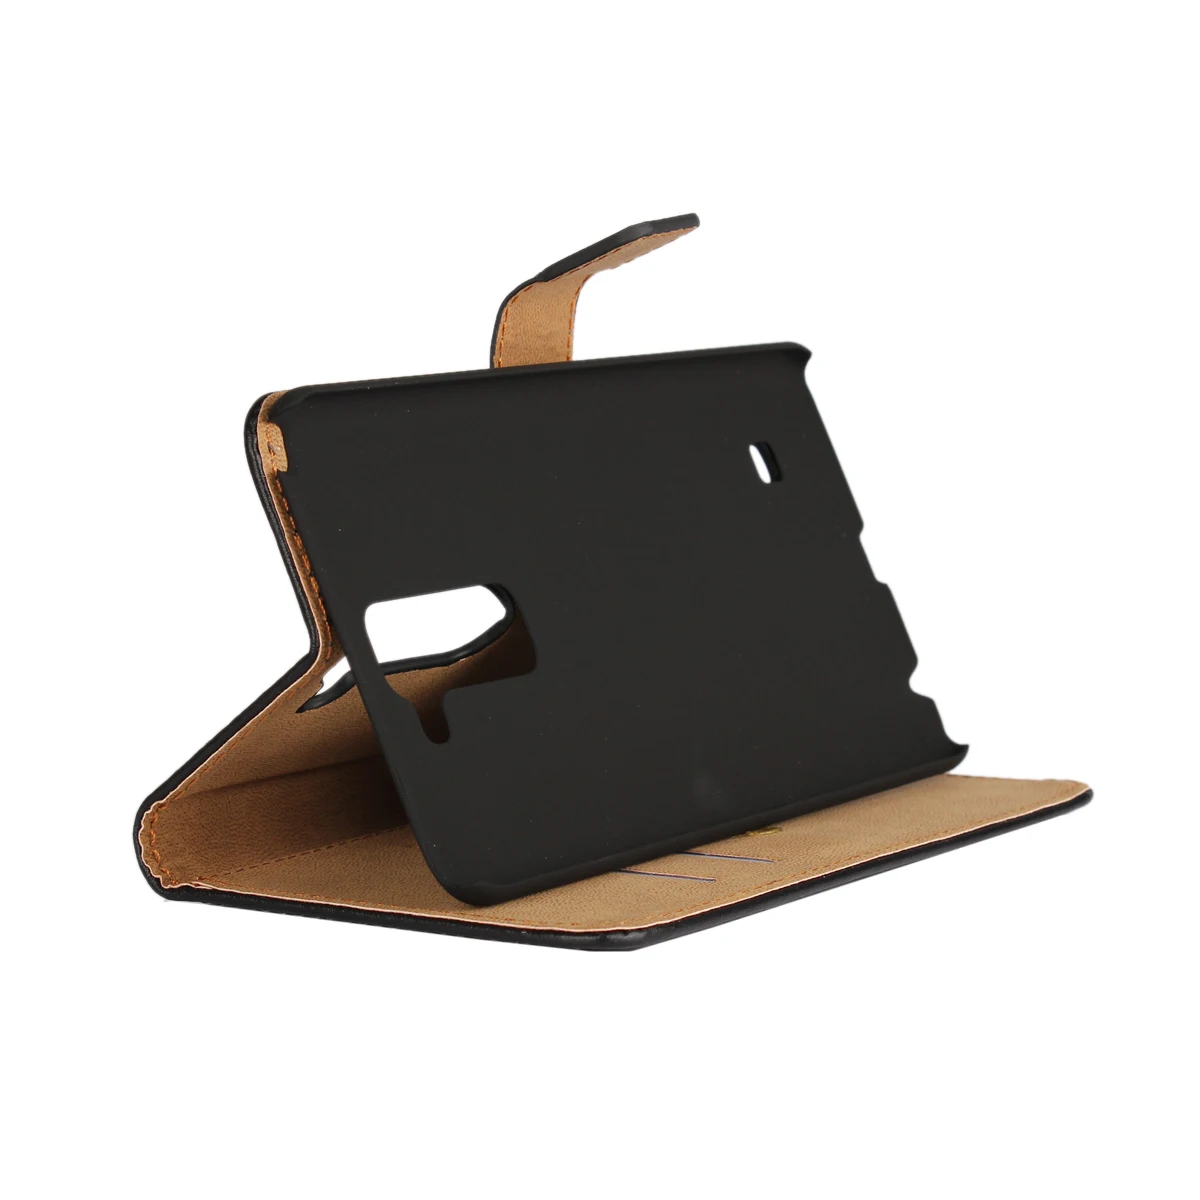 Премиум кожаный флип-чехол Роскошный чехол-портмоне для LG Stylus 2 5," держатель для карт чехол для телефона GG